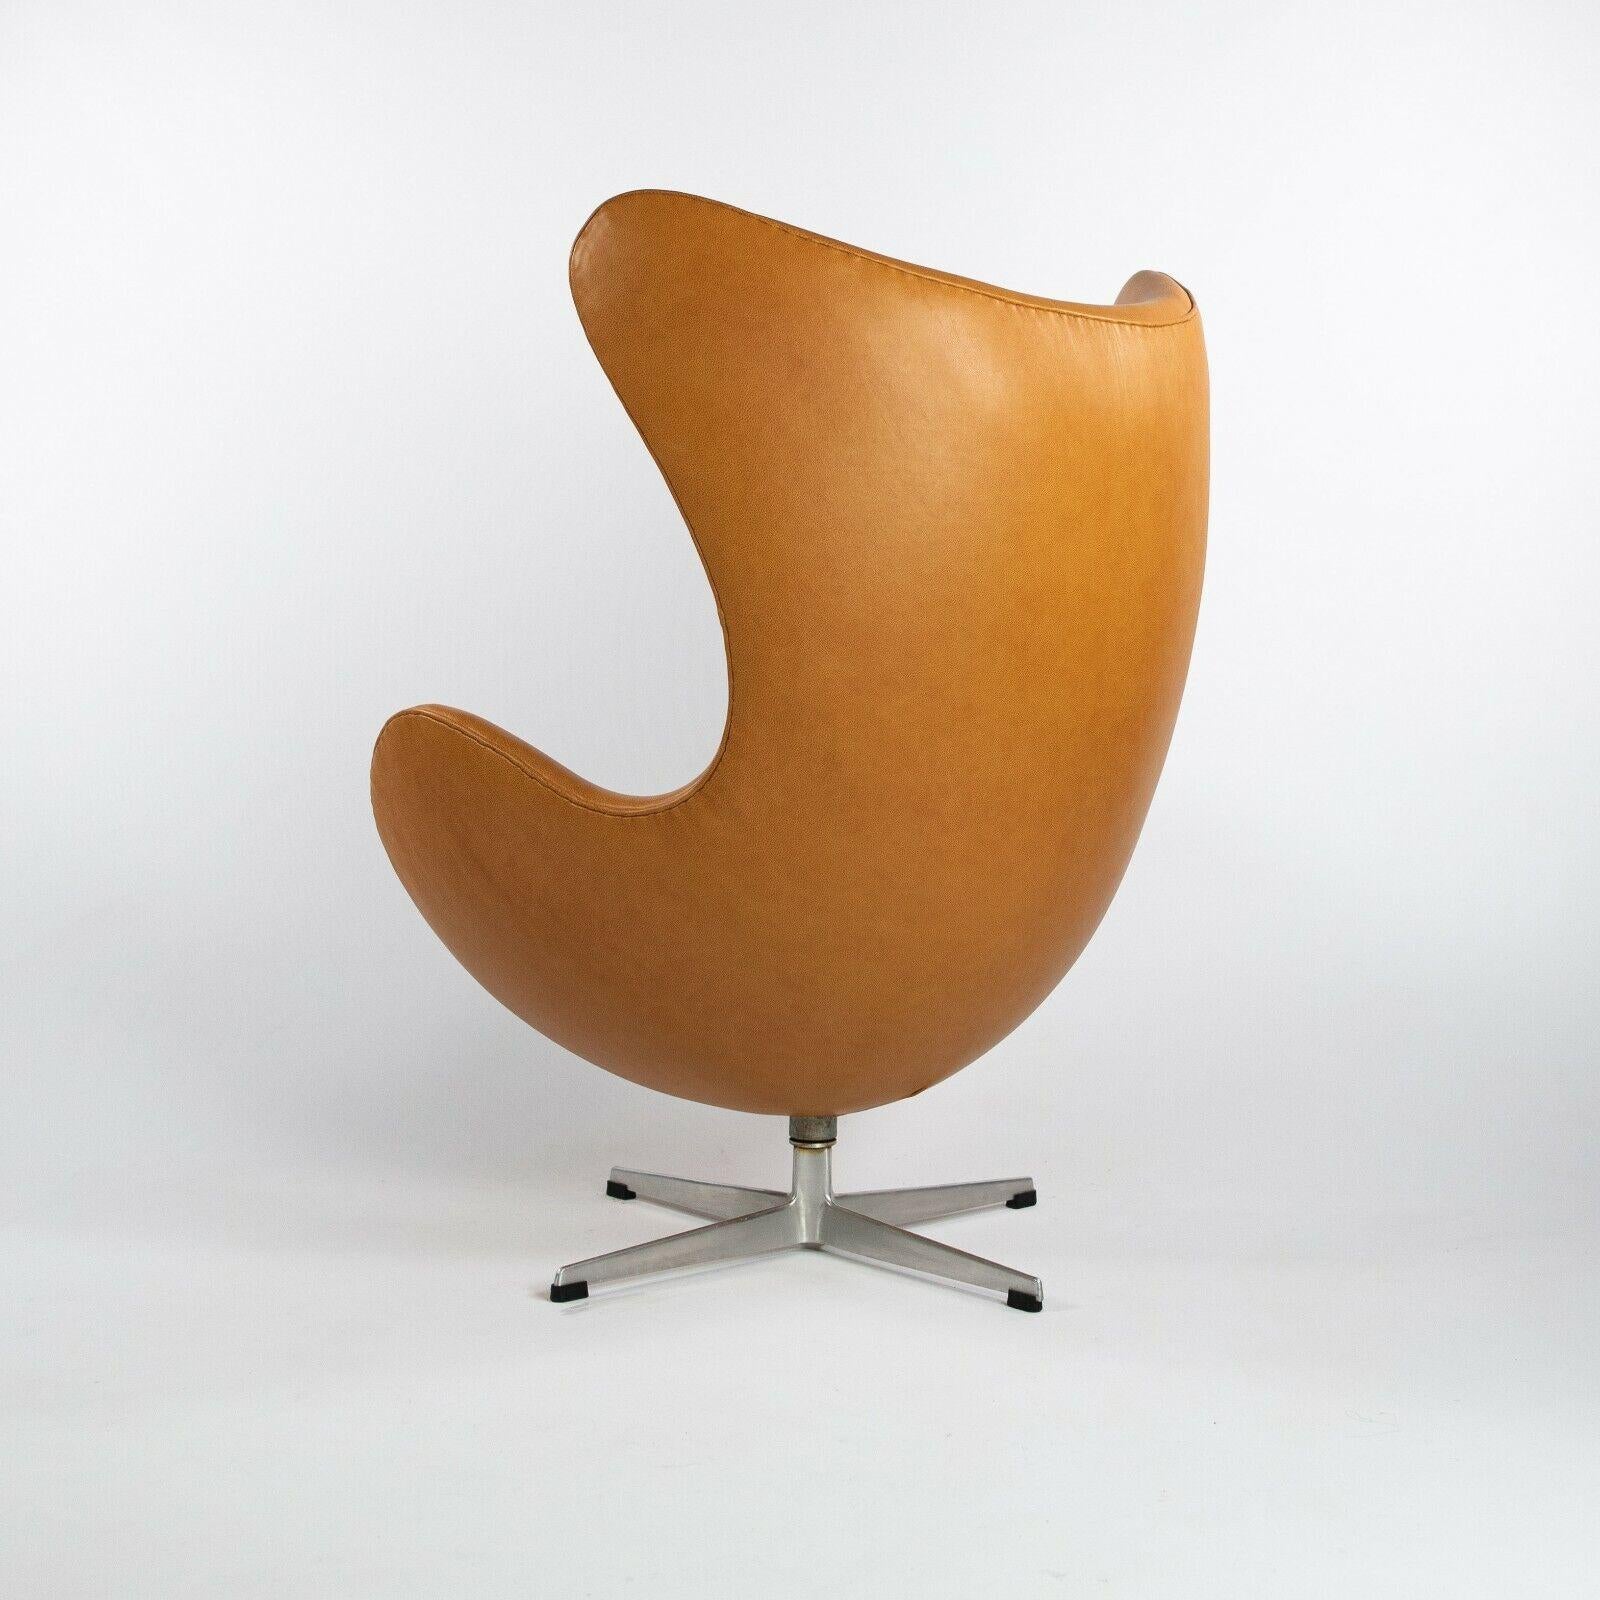 Modern 1959 Arne Jacobsen for Fritz Hansen Egg Chair & Ottoman in Tan / Cognac Leather For Sale